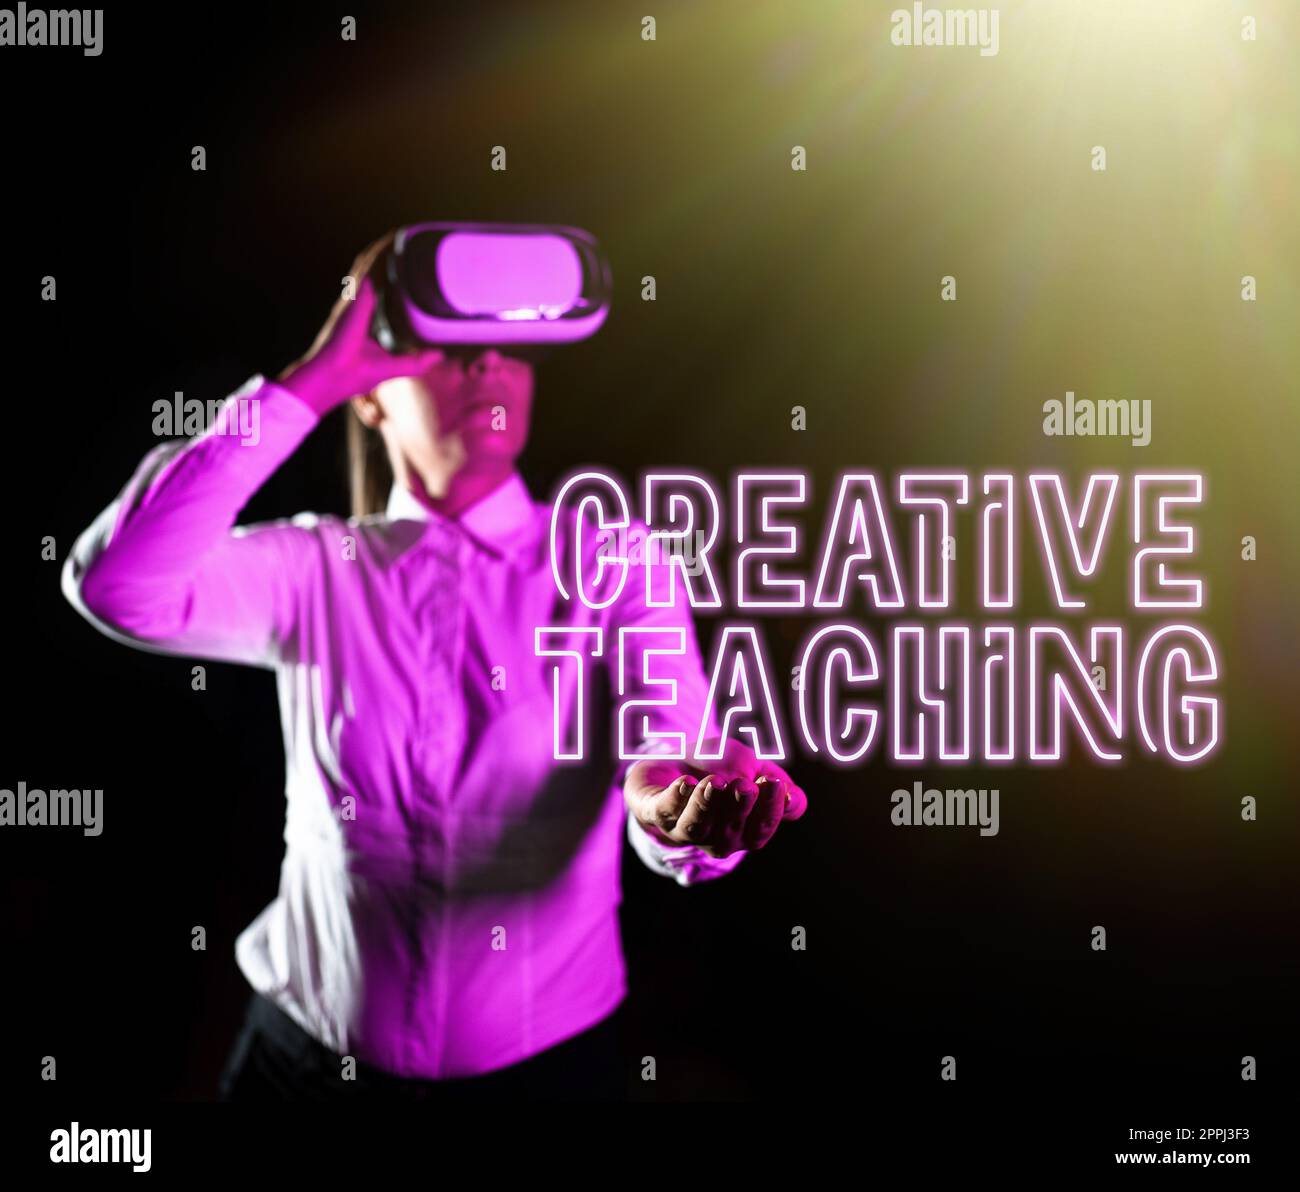 Konzeptionelle Beschriftung Creative Teaching. Geschäftsansatz der Akt des Coachings auf neuartige Weise, der Frauen, die an einer Berufsausbildung teilnehmen, durch eine Virtual Reality Brille fördert. Stockfoto